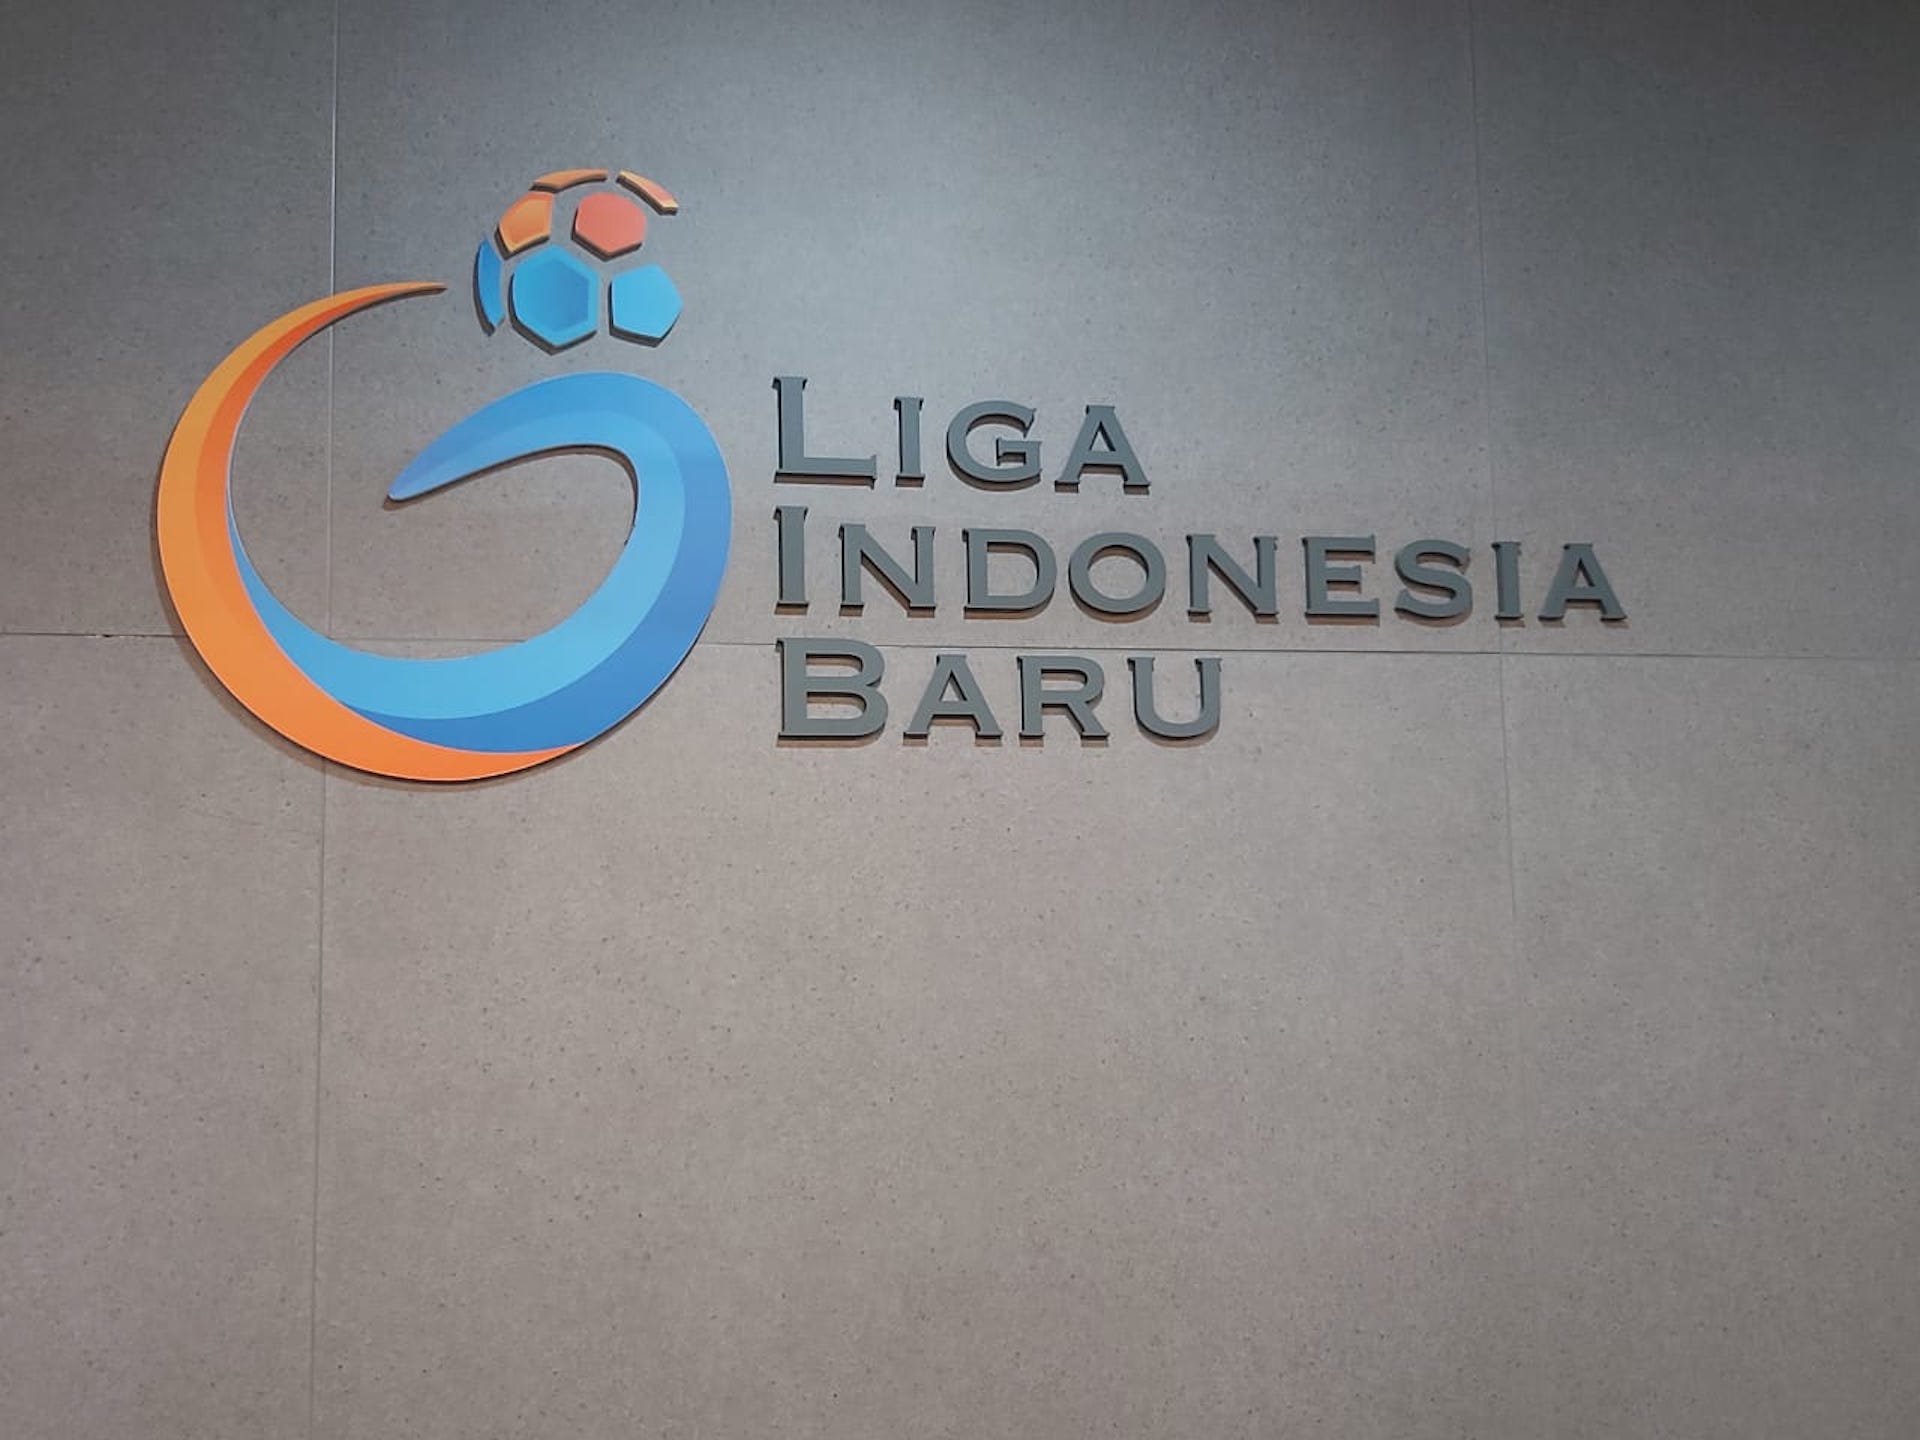 PT Liga Indonesia Baru (logo)